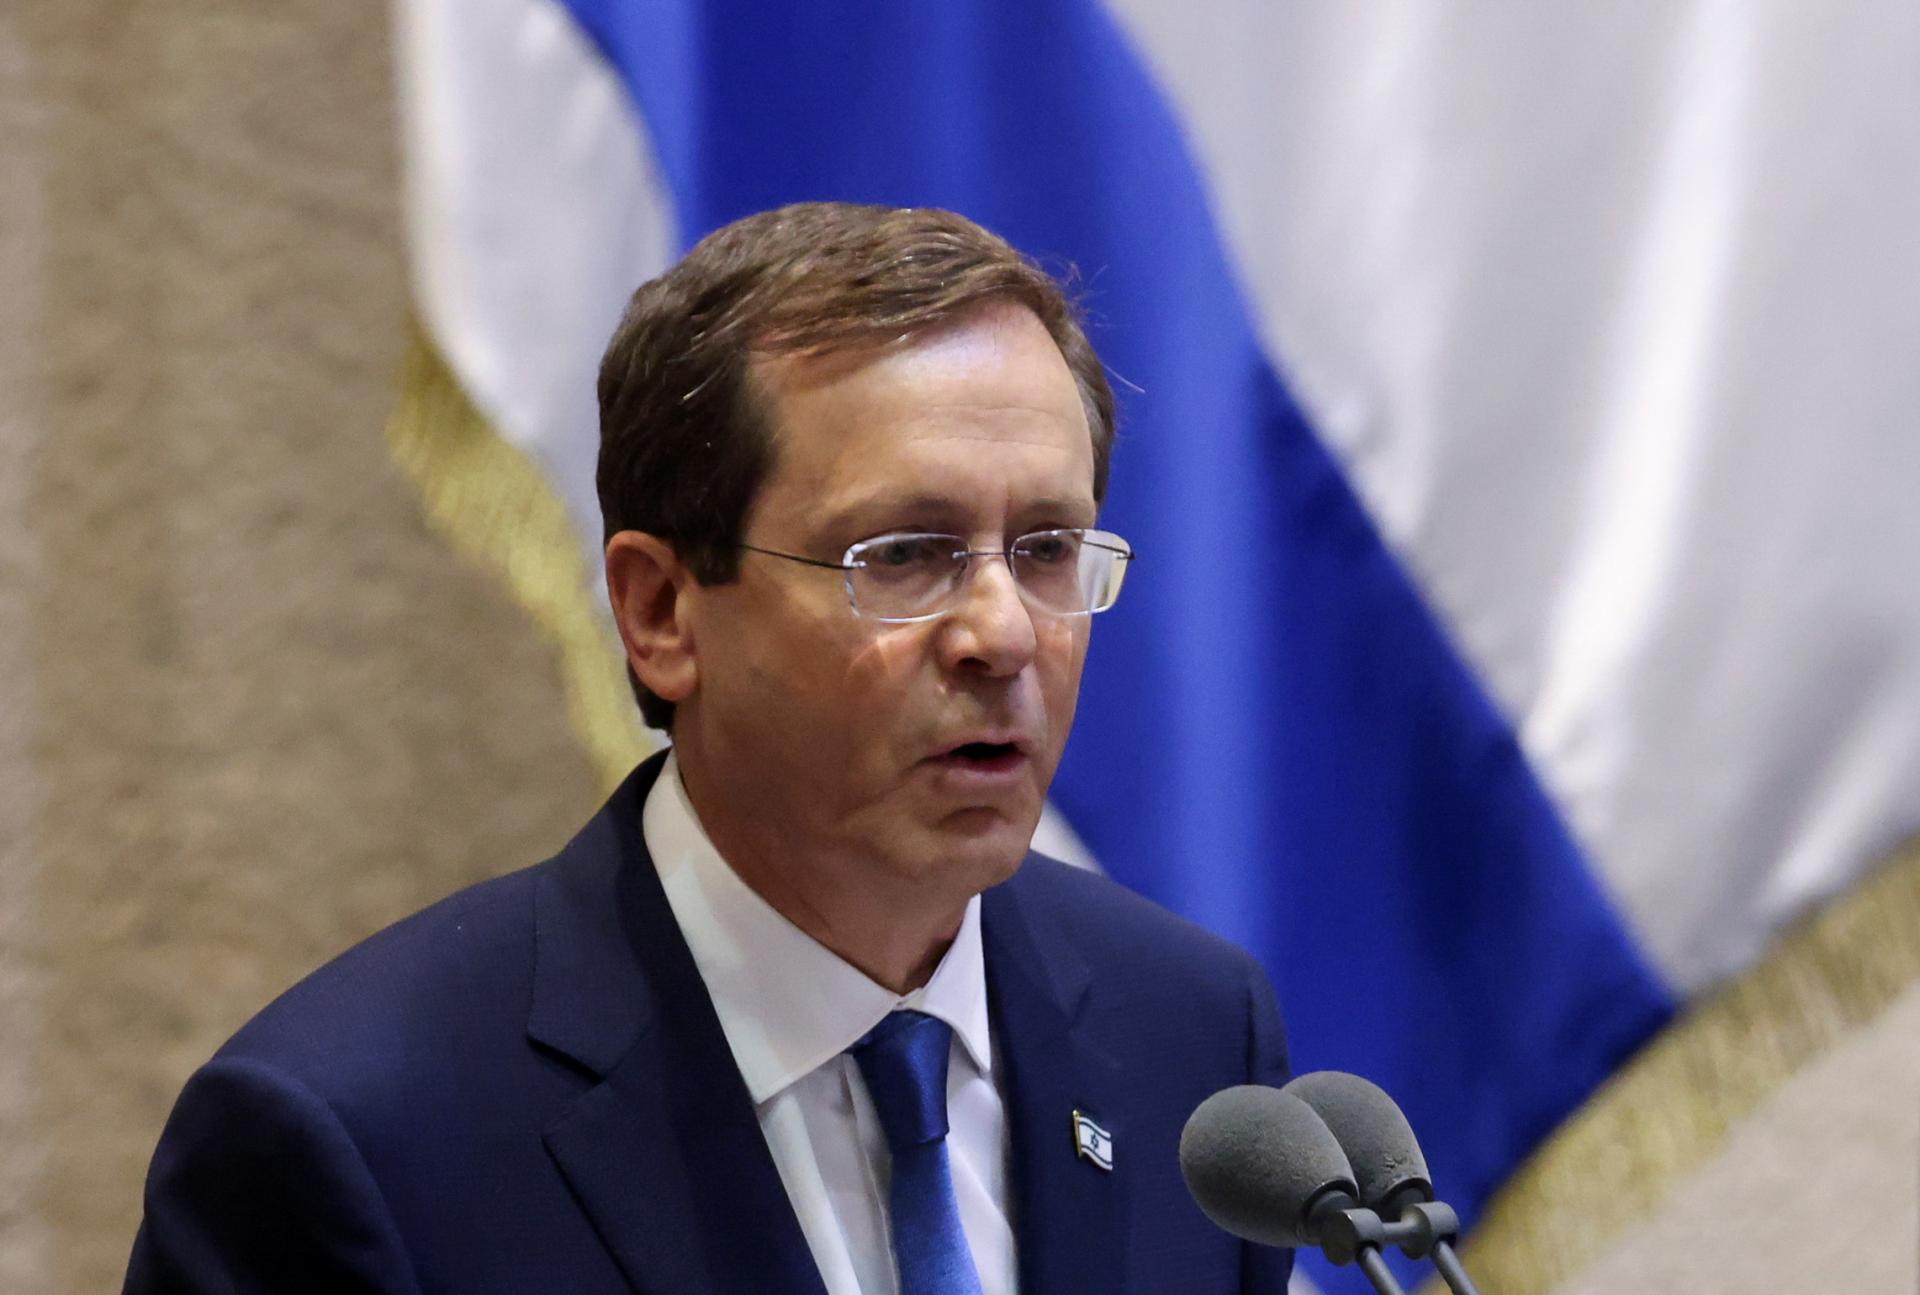 Izrael už polroka bojuje v Gaze v krvavej a náročnej vojne, tvrdí Herzog. Desaťtisíce jej vedenie kritizujú